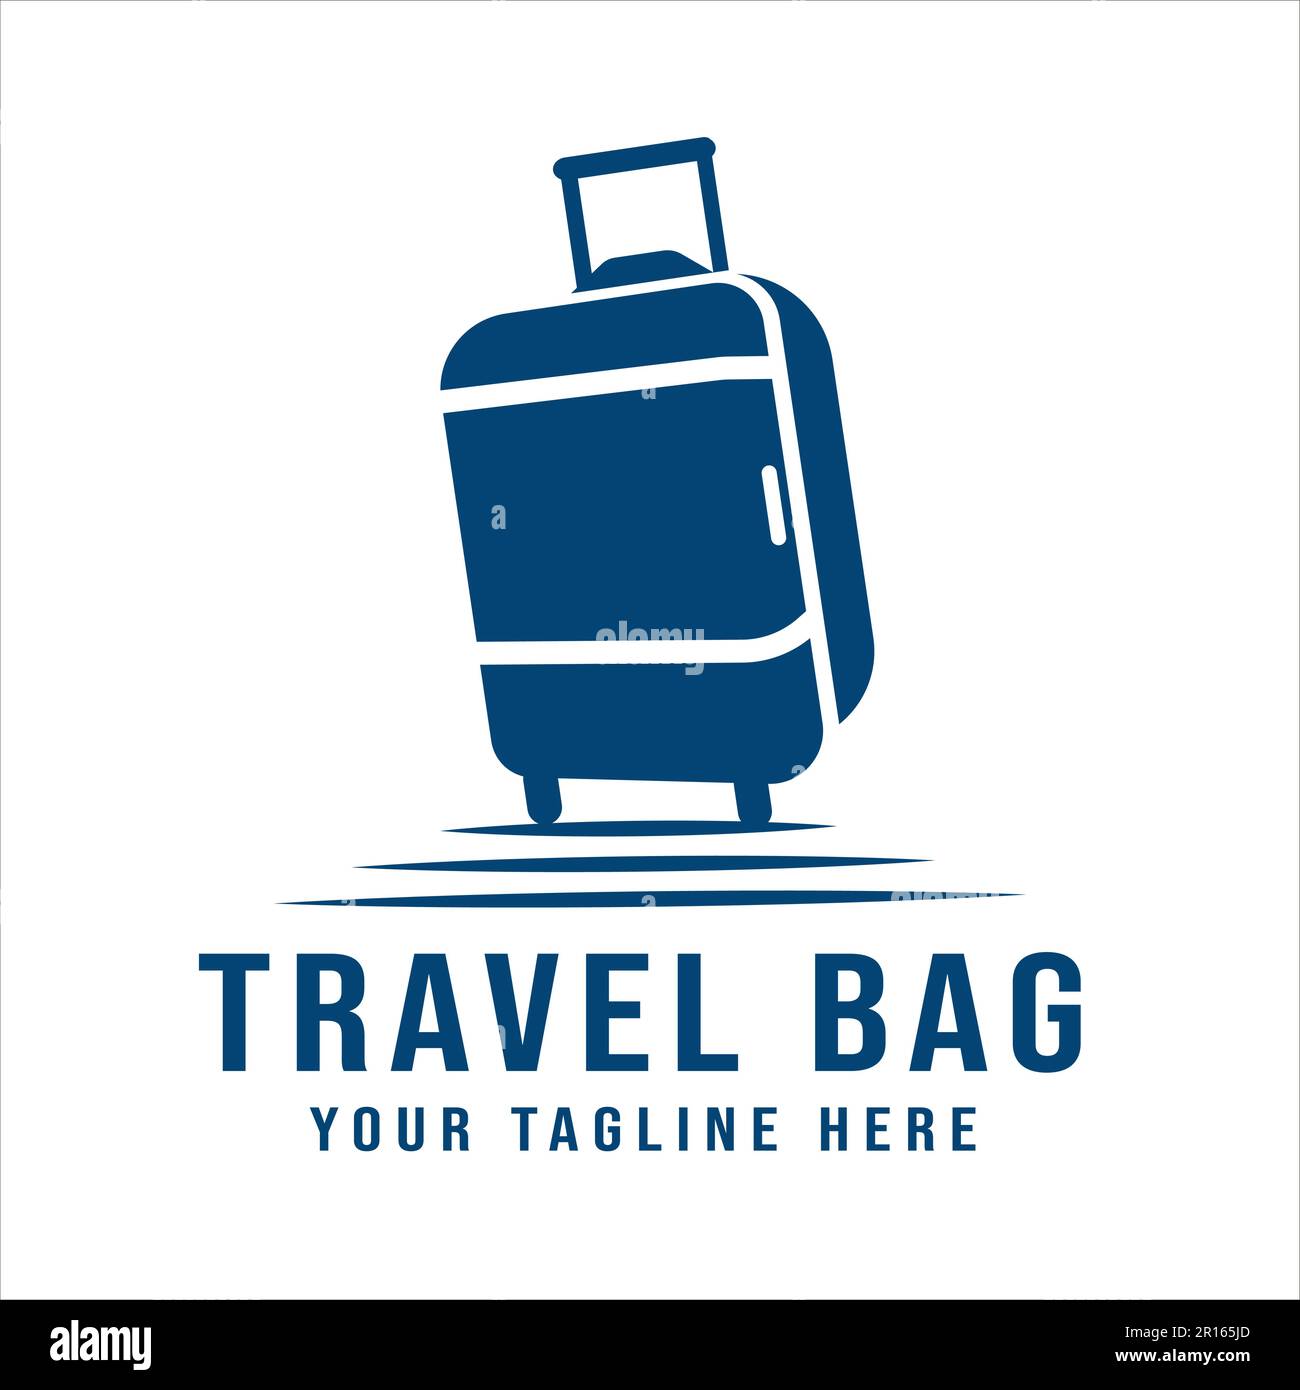 Custom Luggage Tags | VistaPrint